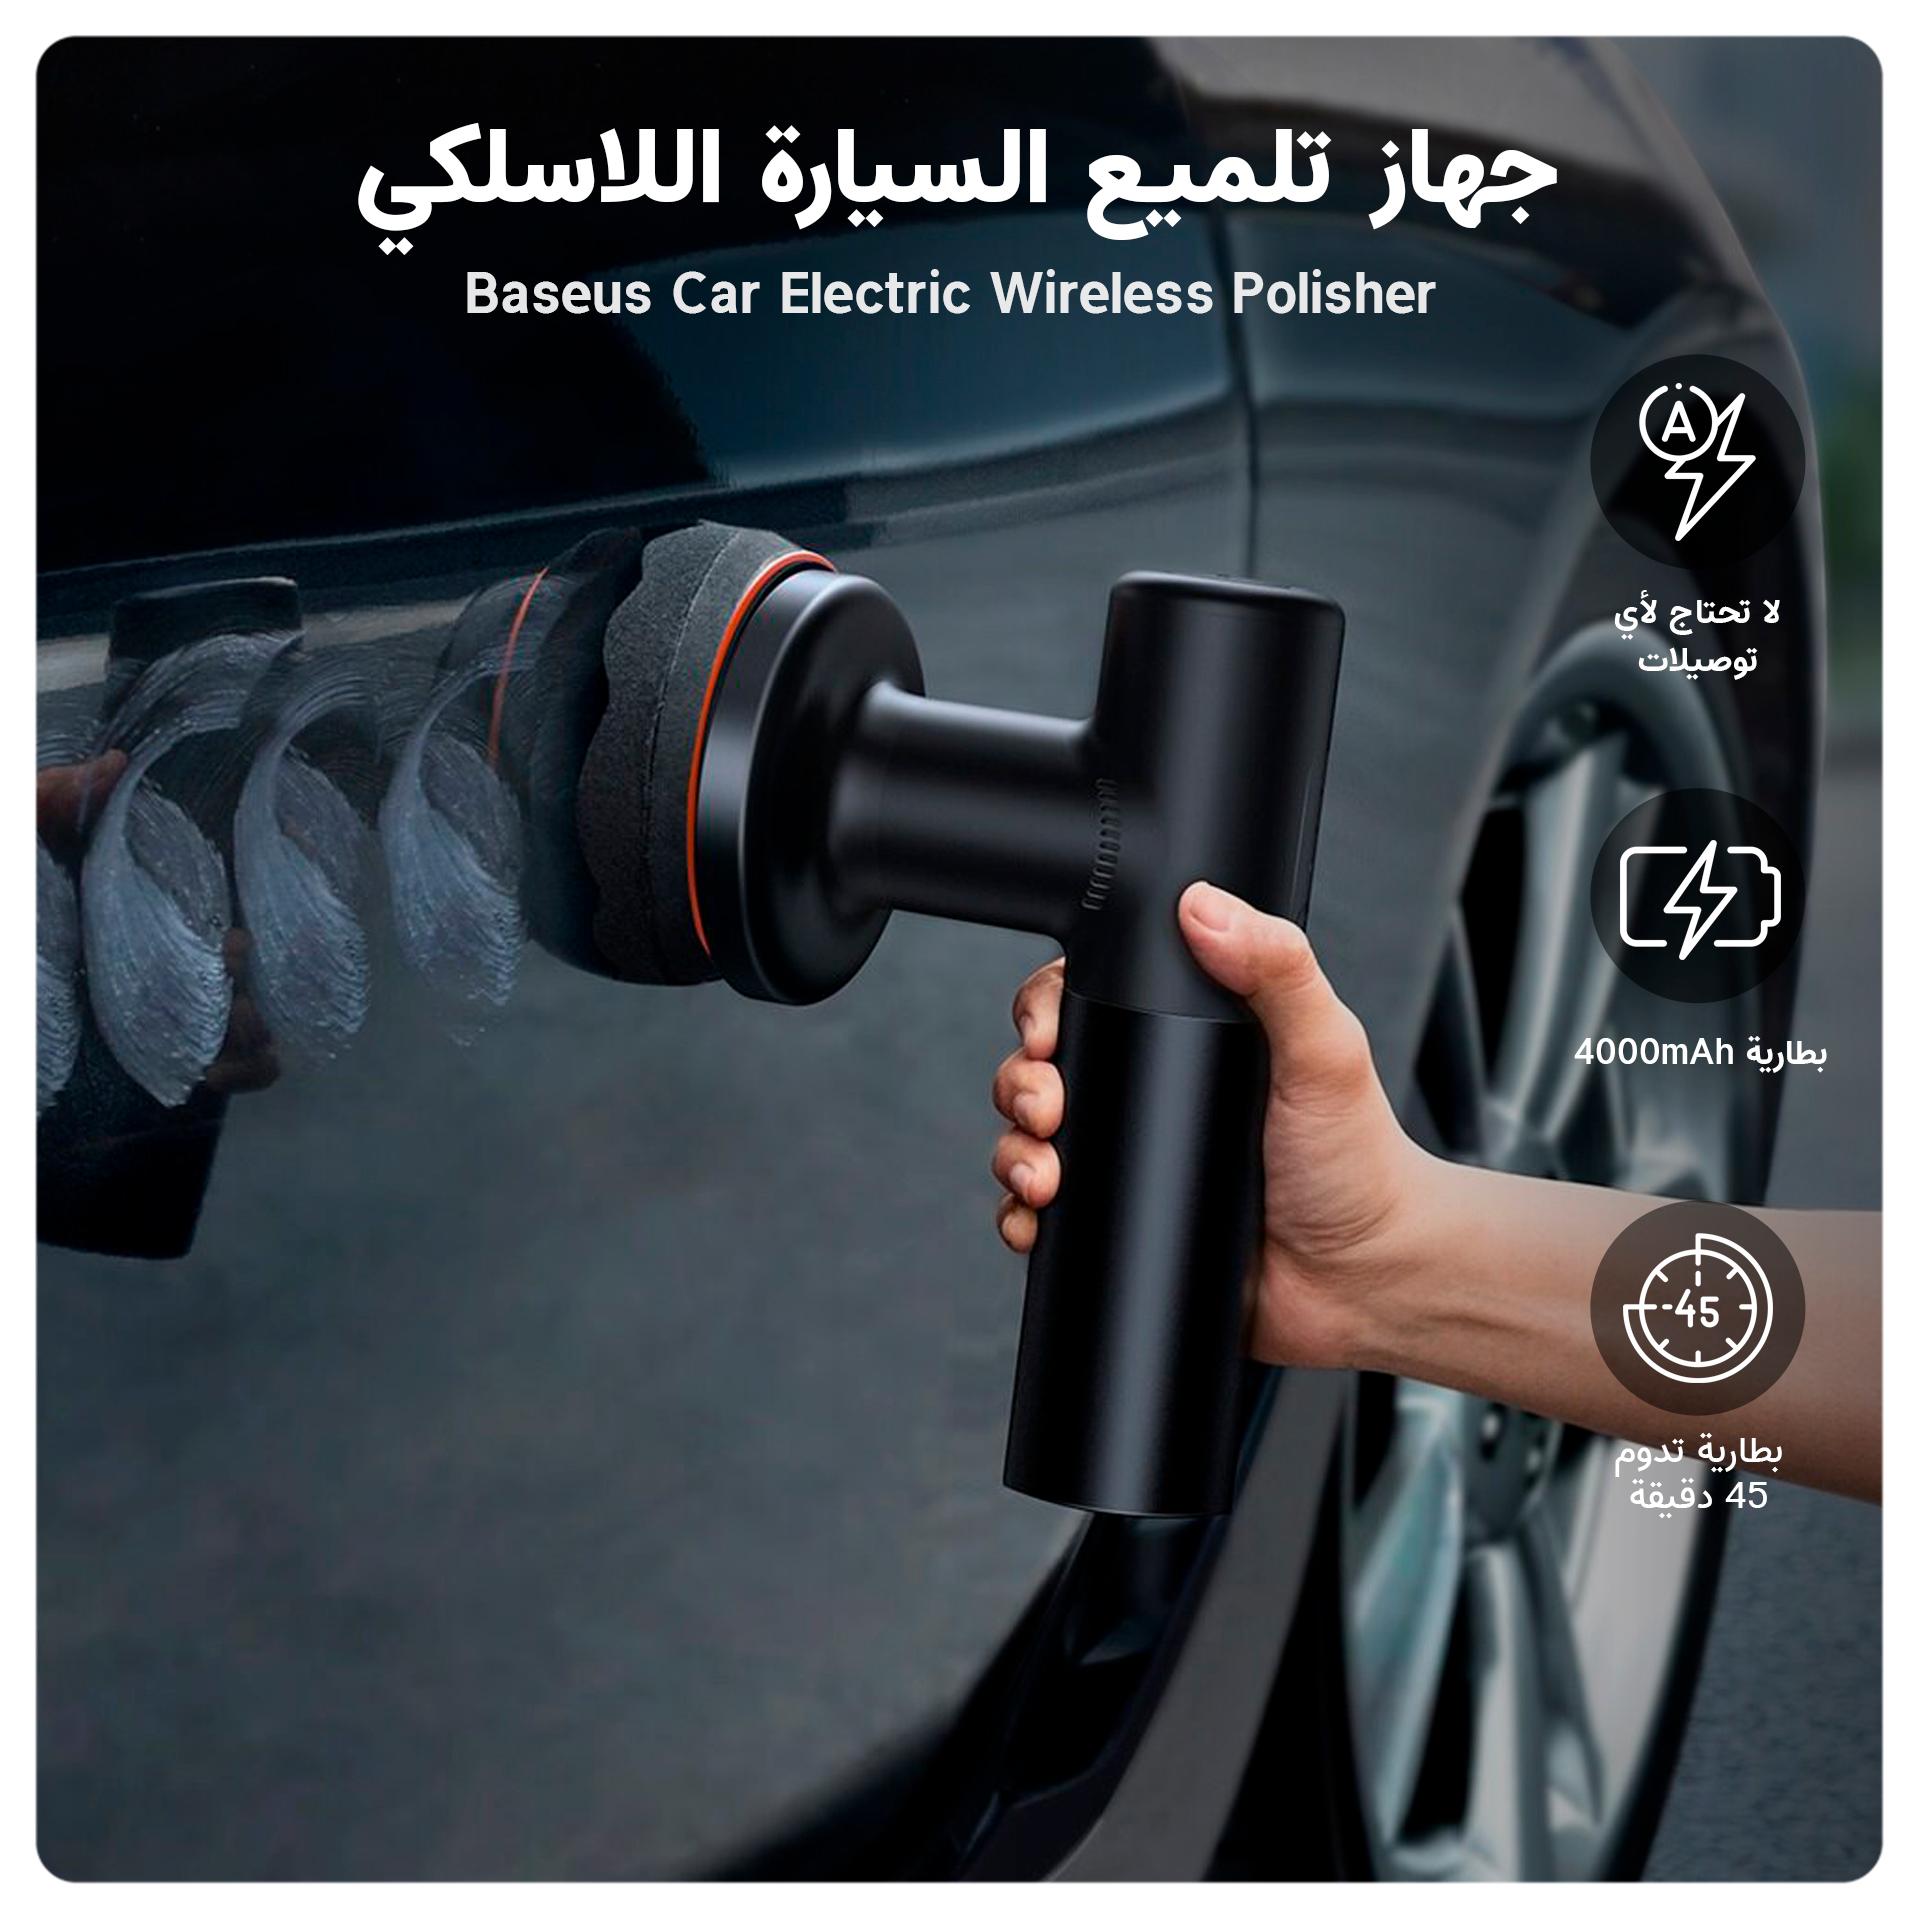 مكينة بوليش السيارات جهاز تلميع السيارة اللاسلكي  Baseus Car Electric Wireless Polisher